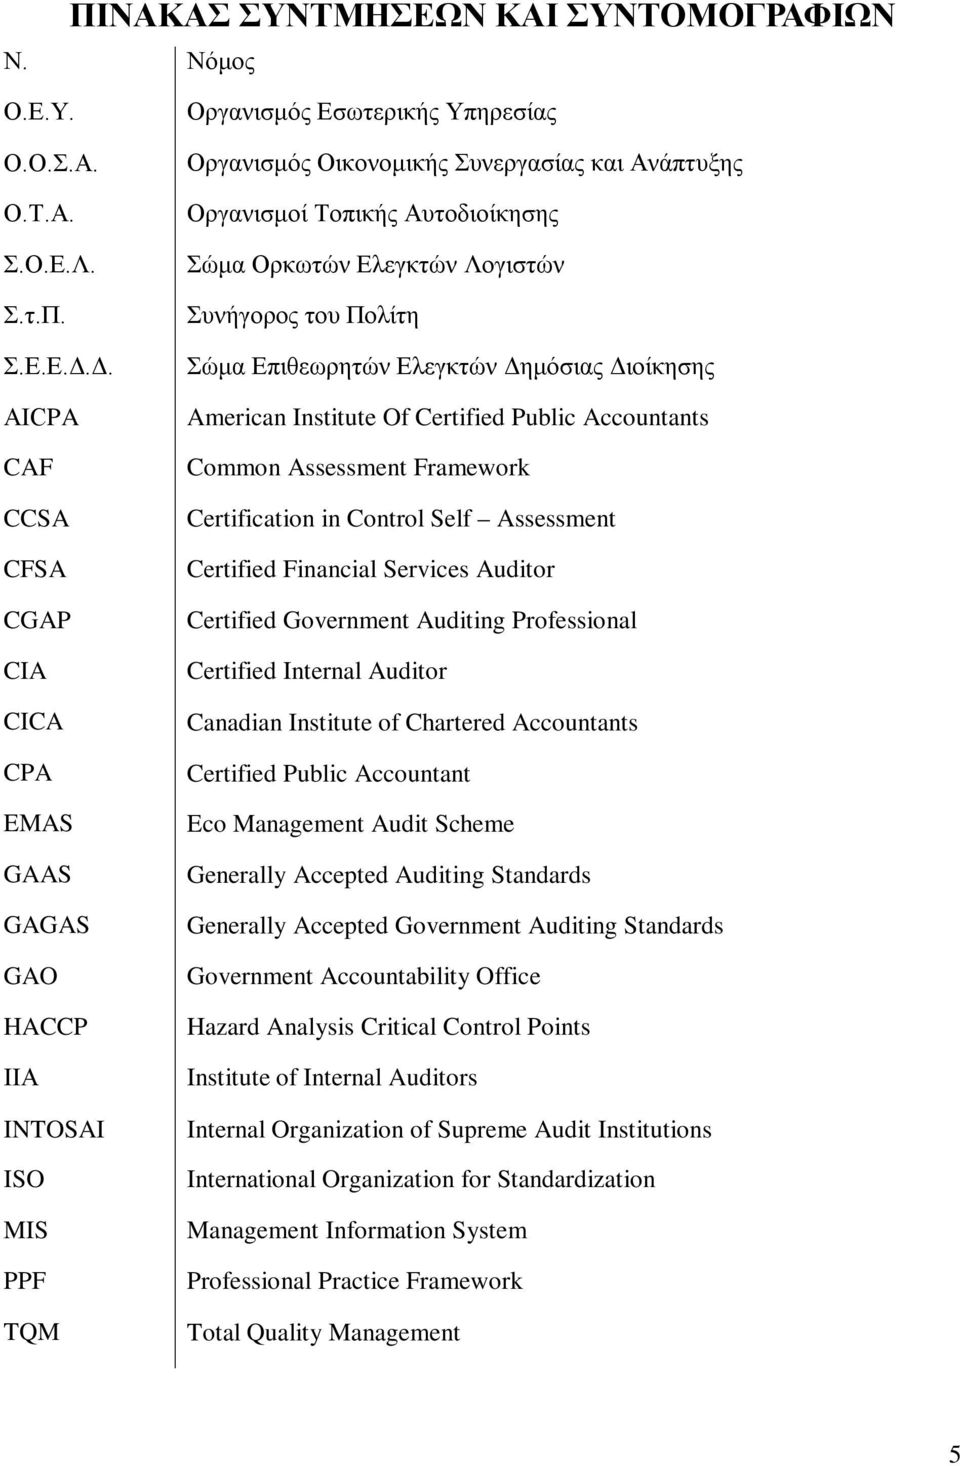 Αυτοδιοίκησης Σώμα Ορκωτών Ελεγκτών Λογιστών Συνήγορος του Πολίτη Σώμα Επιθεωρητών Ελεγκτών Δημόσιας Διοίκησης American Institute Of Certified Public Accountants Common Assessment Framework